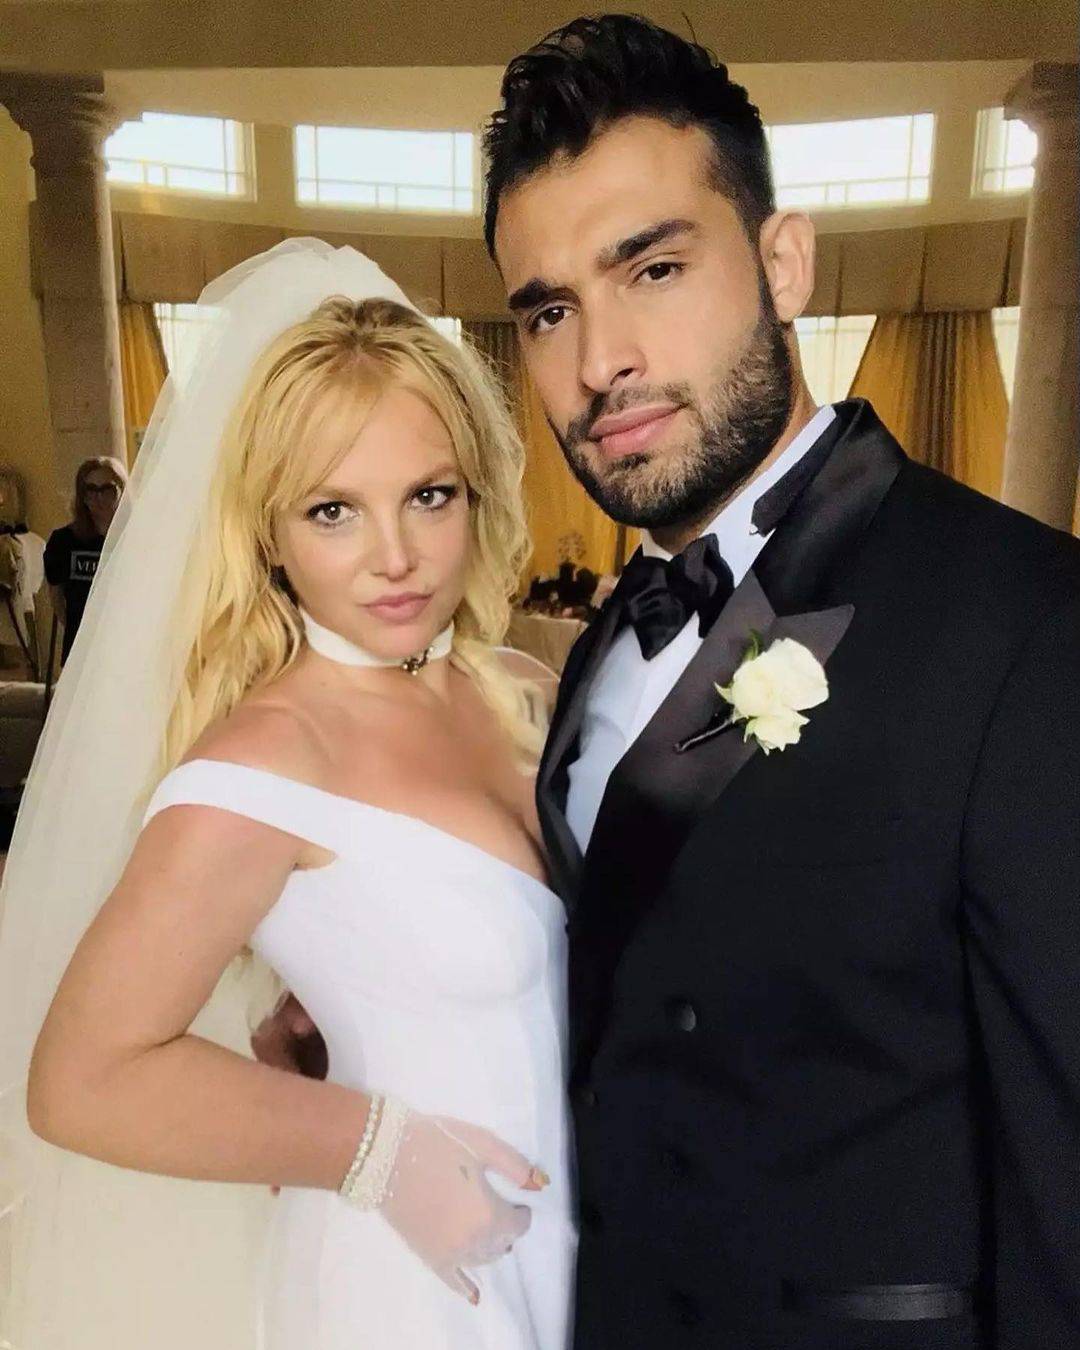 Suprug Britney Spears stao na kraj glasinama da ju kontrolira: 'Ne biram ni što ćemo večerati'